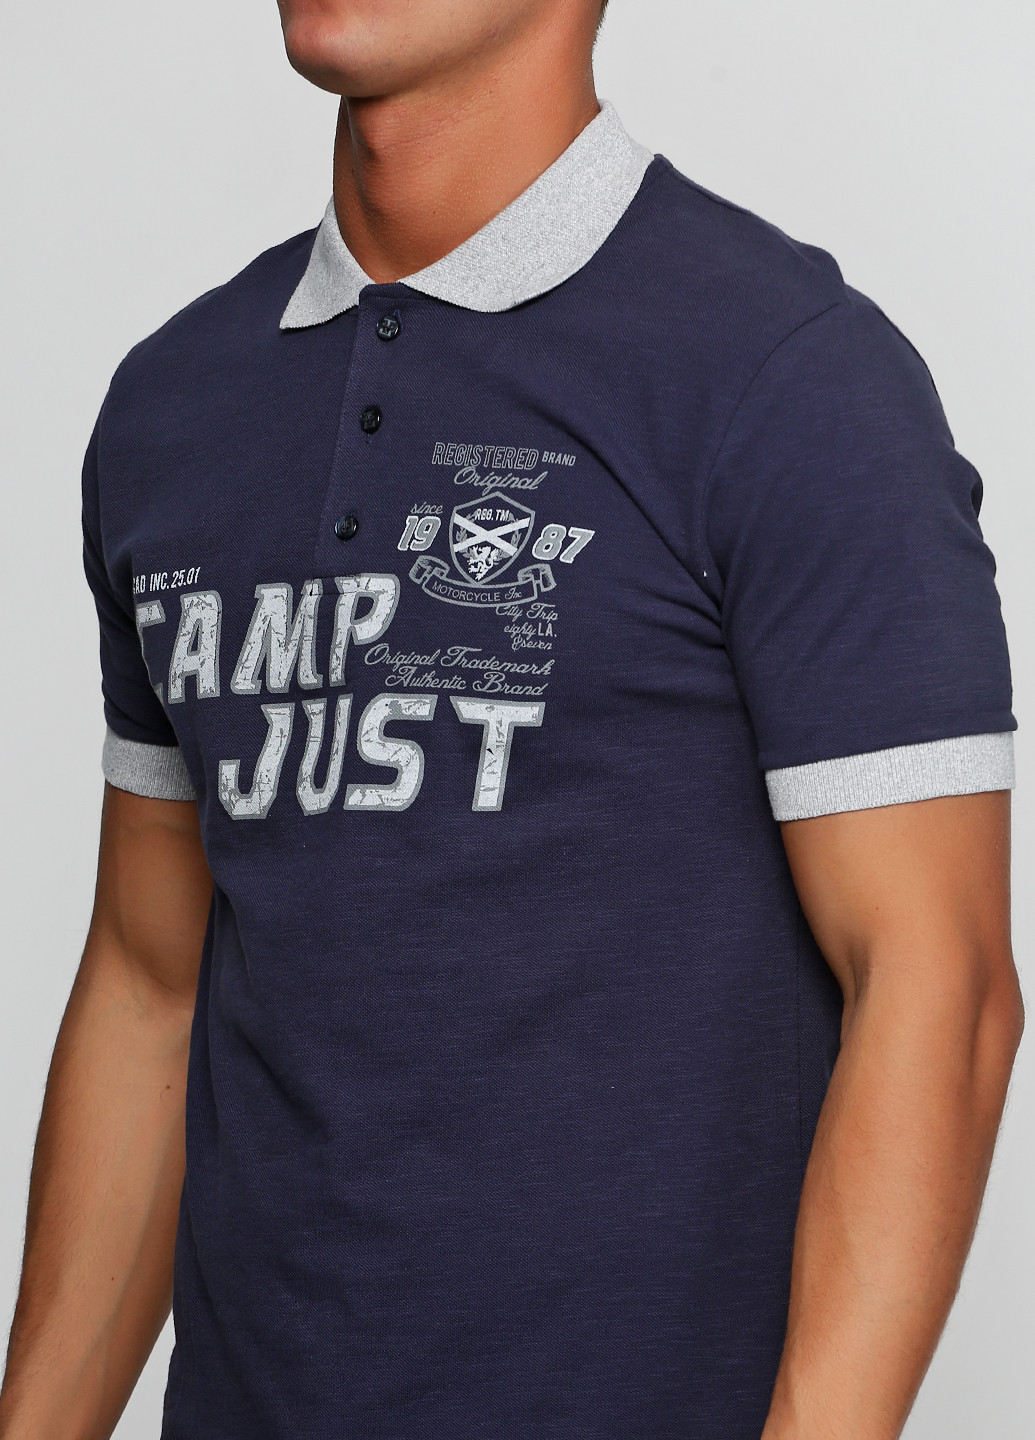 Темно-синяя футболка-поло для мужчин Chiarotex с надписью